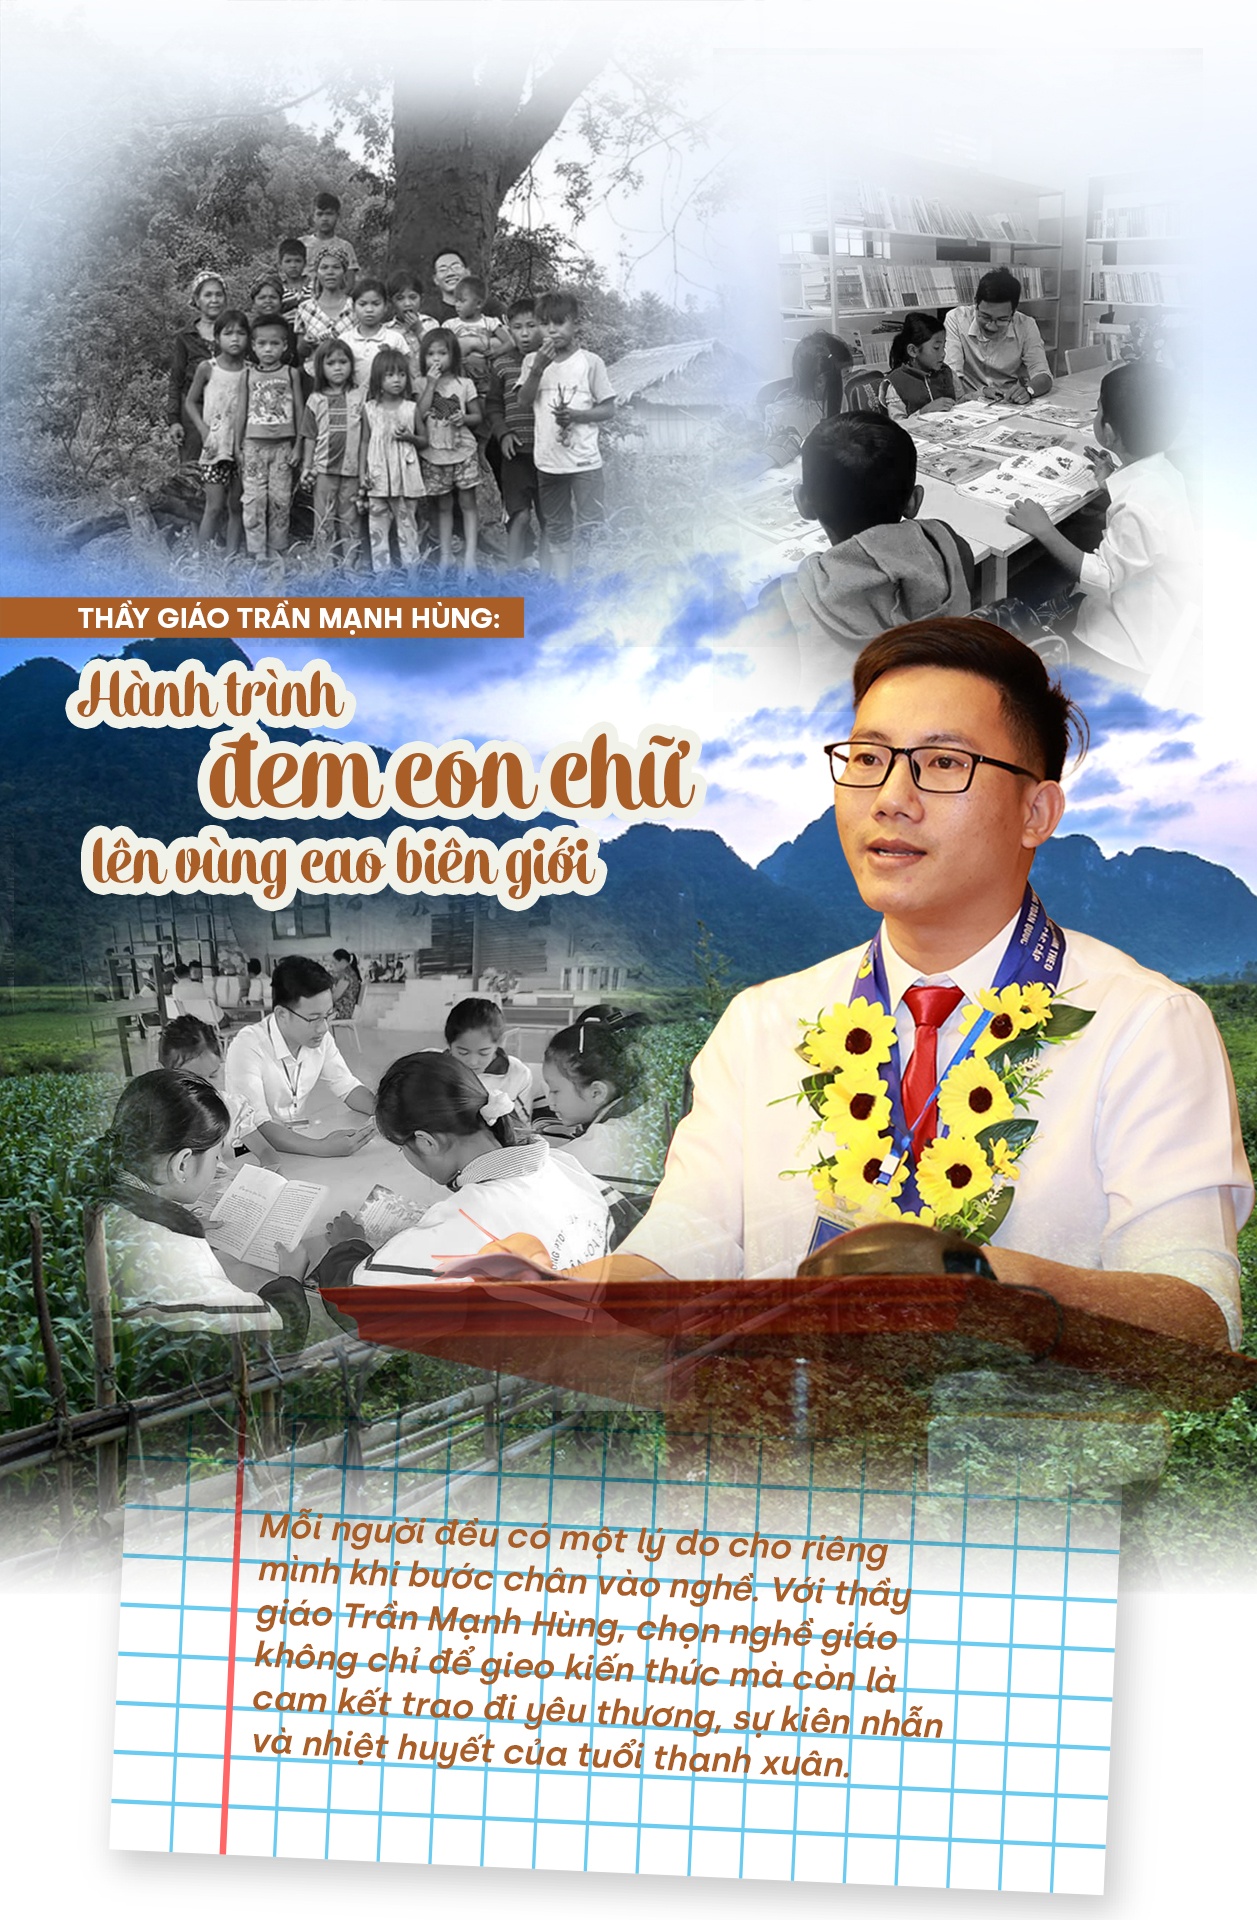 Thầy giáo Trần Mạnh Hùng: Hành trình đem con chữ lên vùng cao biên giới